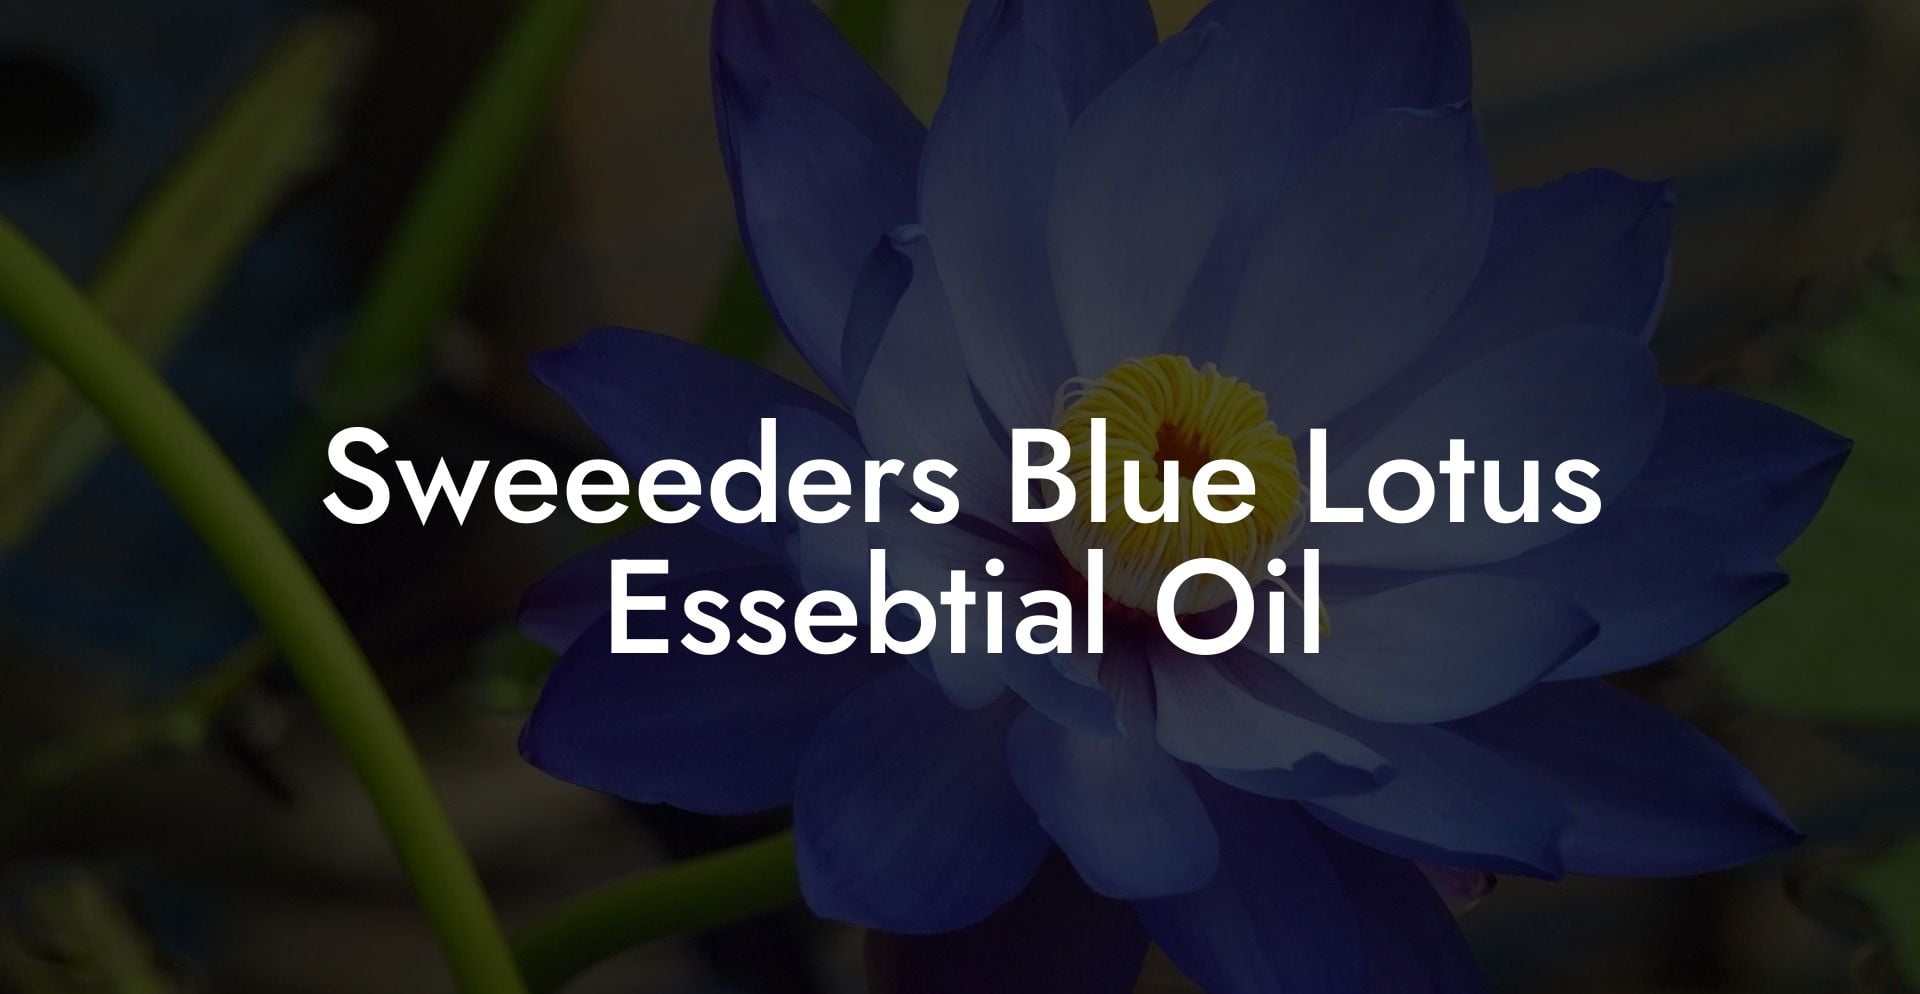 Sweeeders Blue Lotus Essebtial Oil